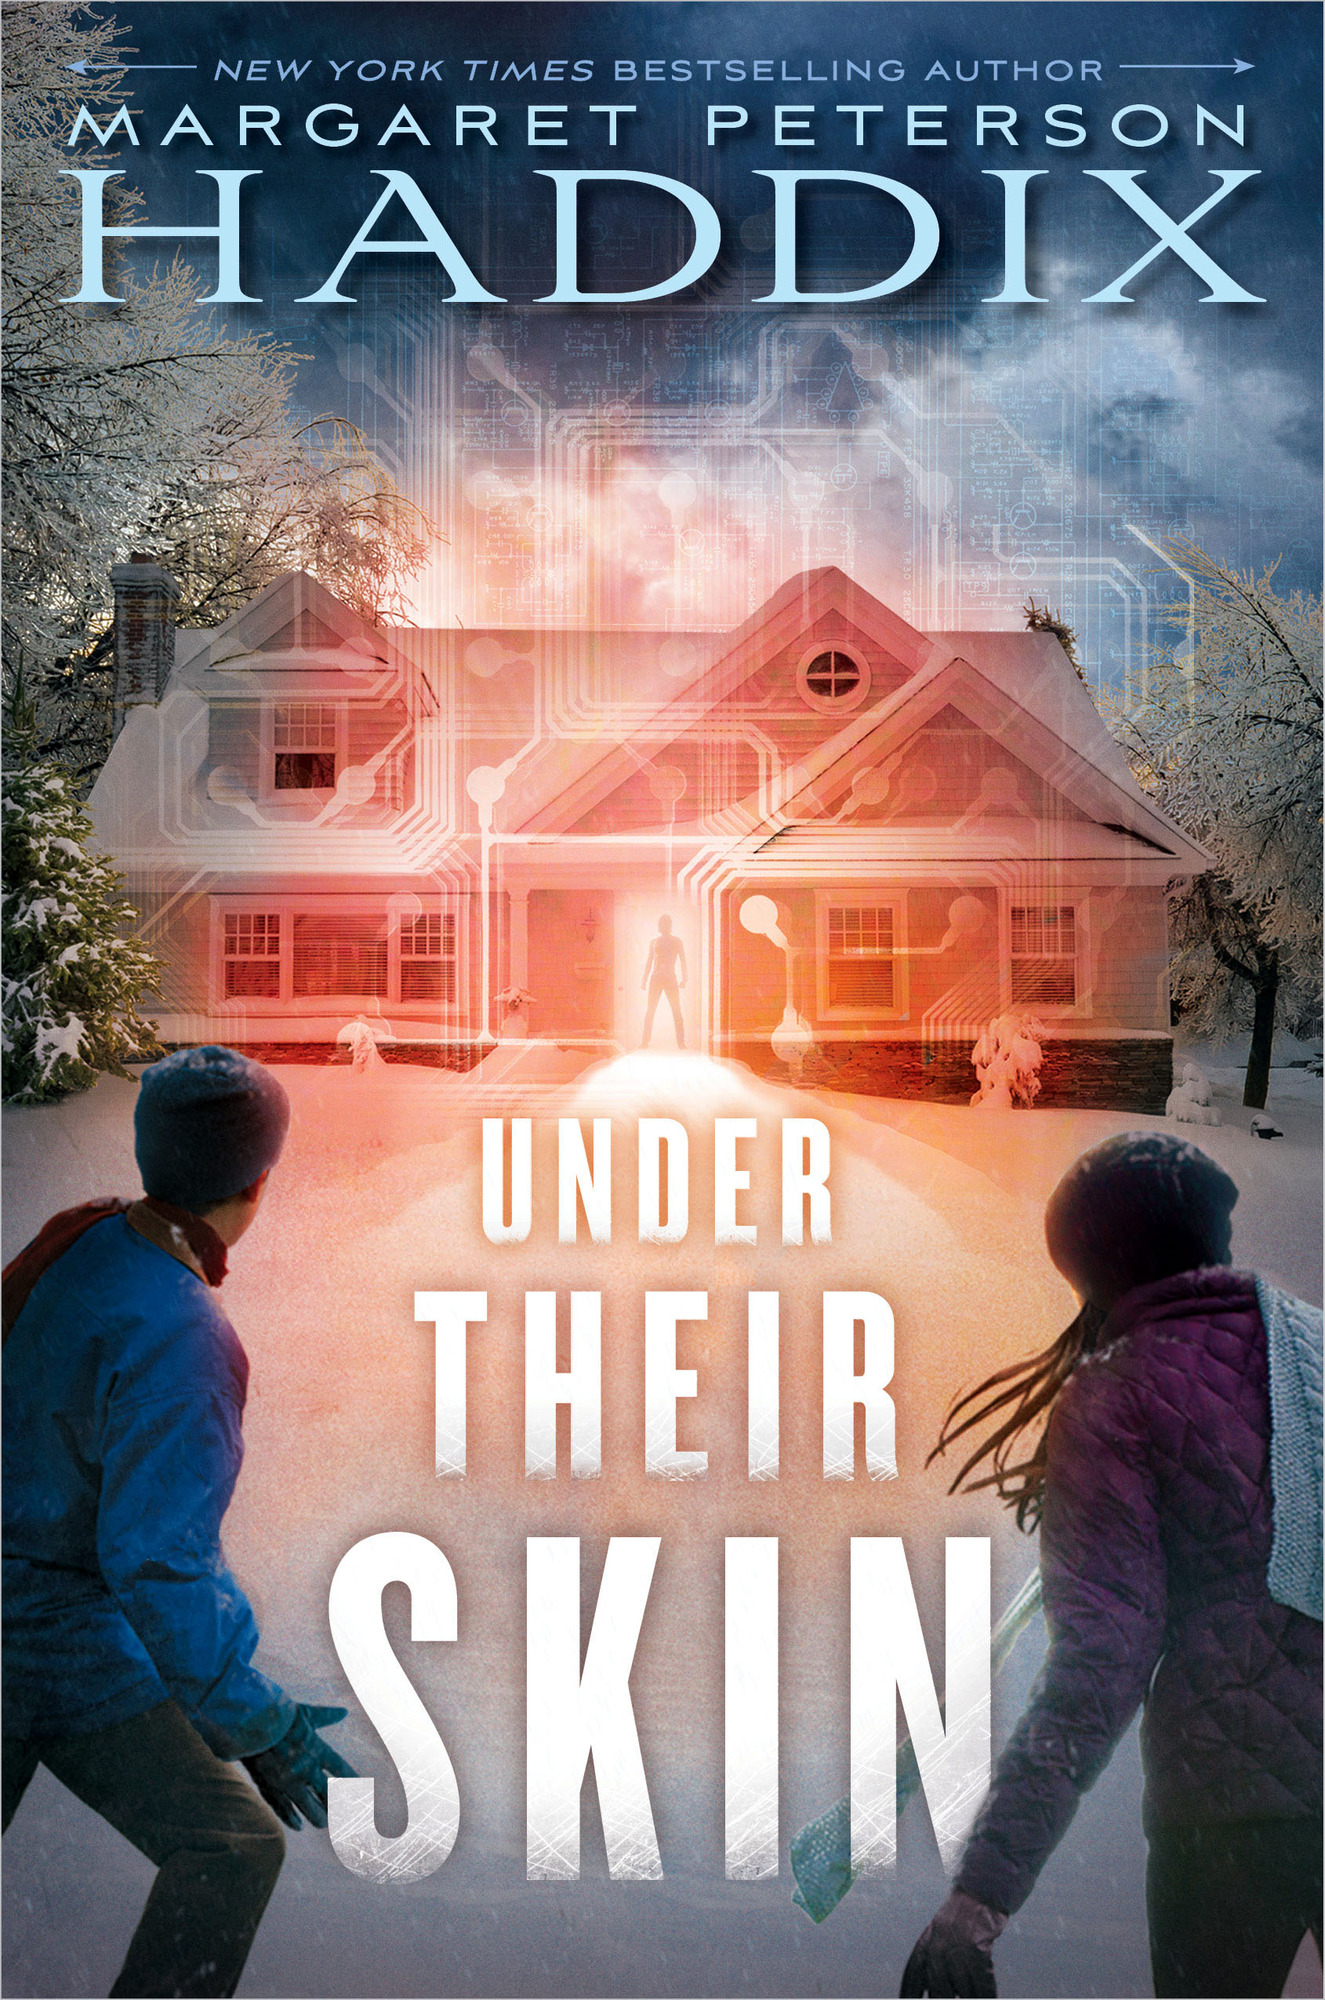 Under Their Skin by Margaret Peterson Haddix